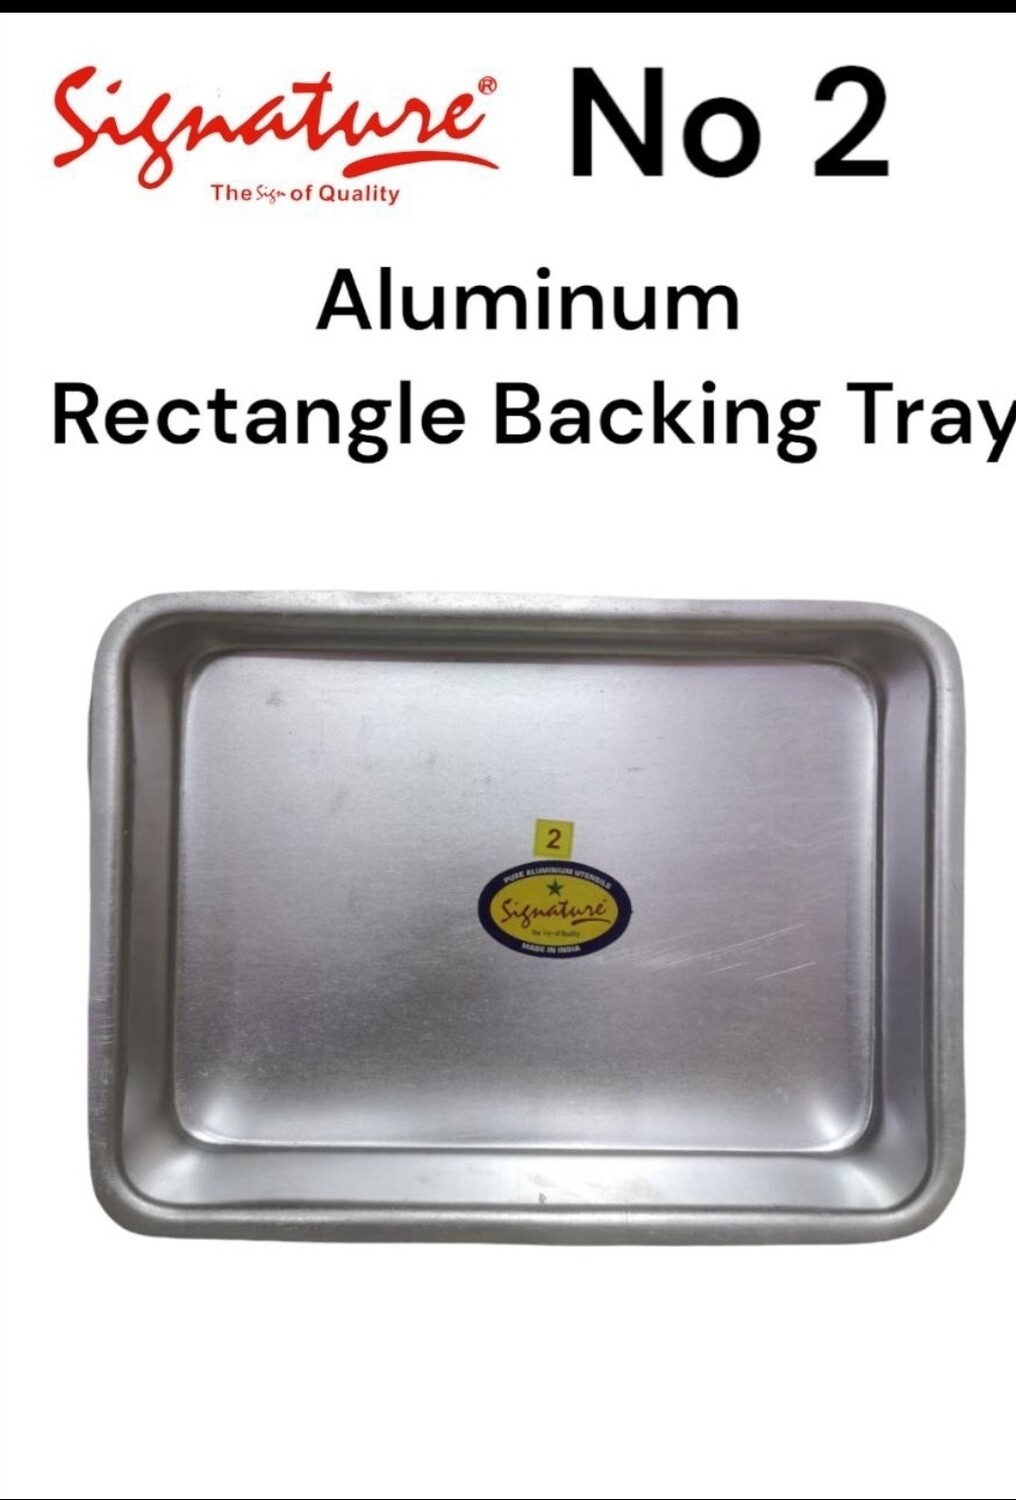 Signature aluminium backing tray no2